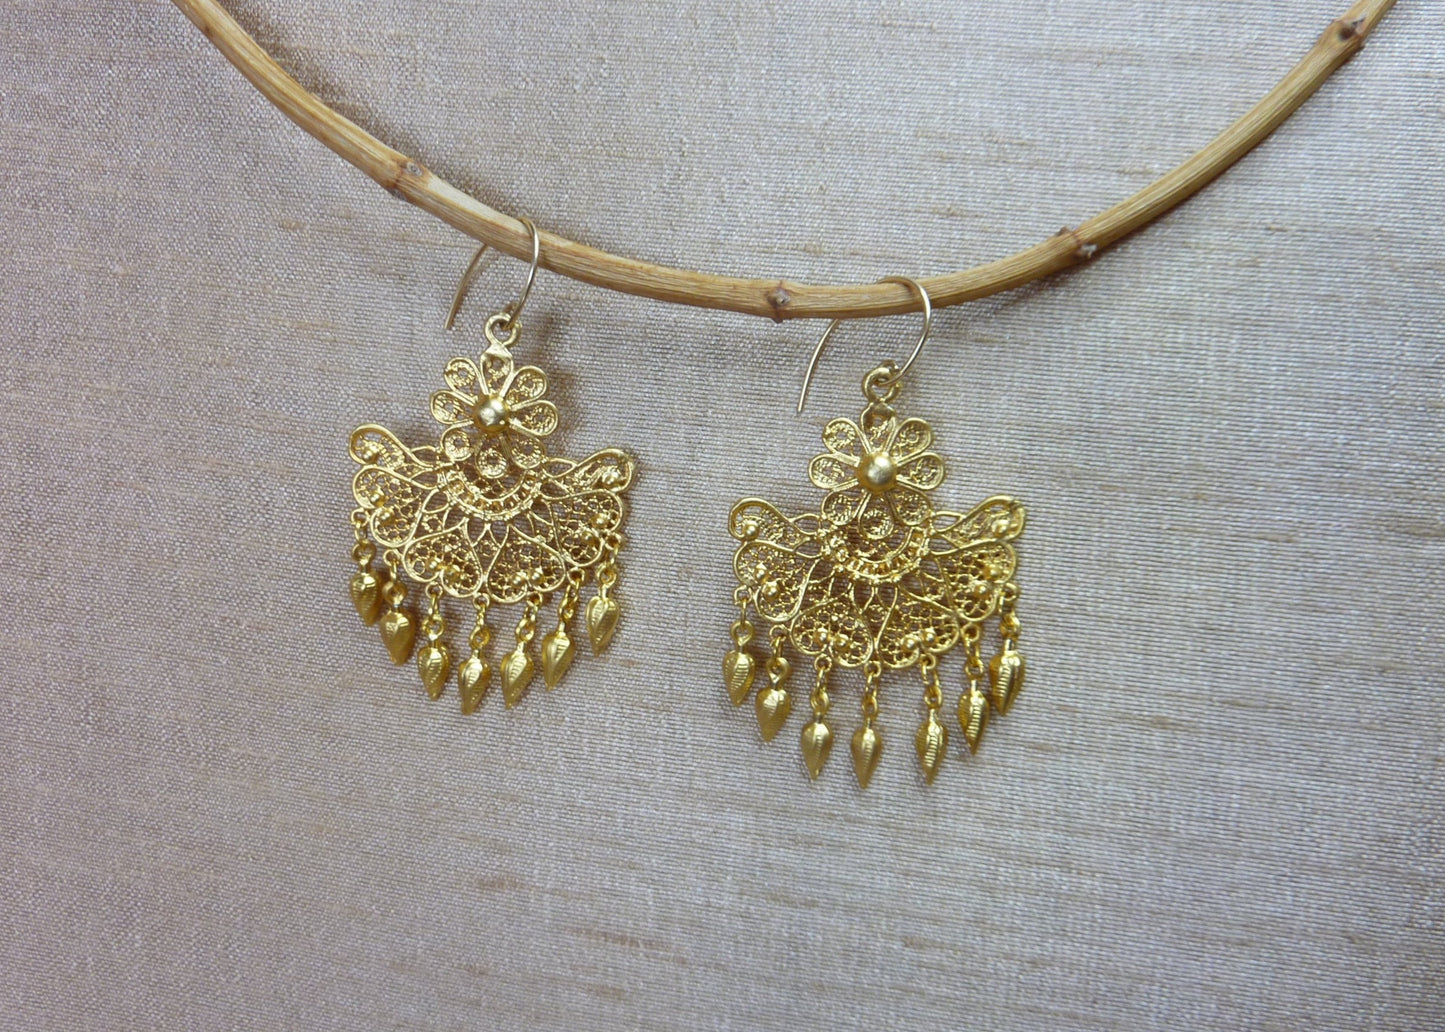 Indian style tassel earrings